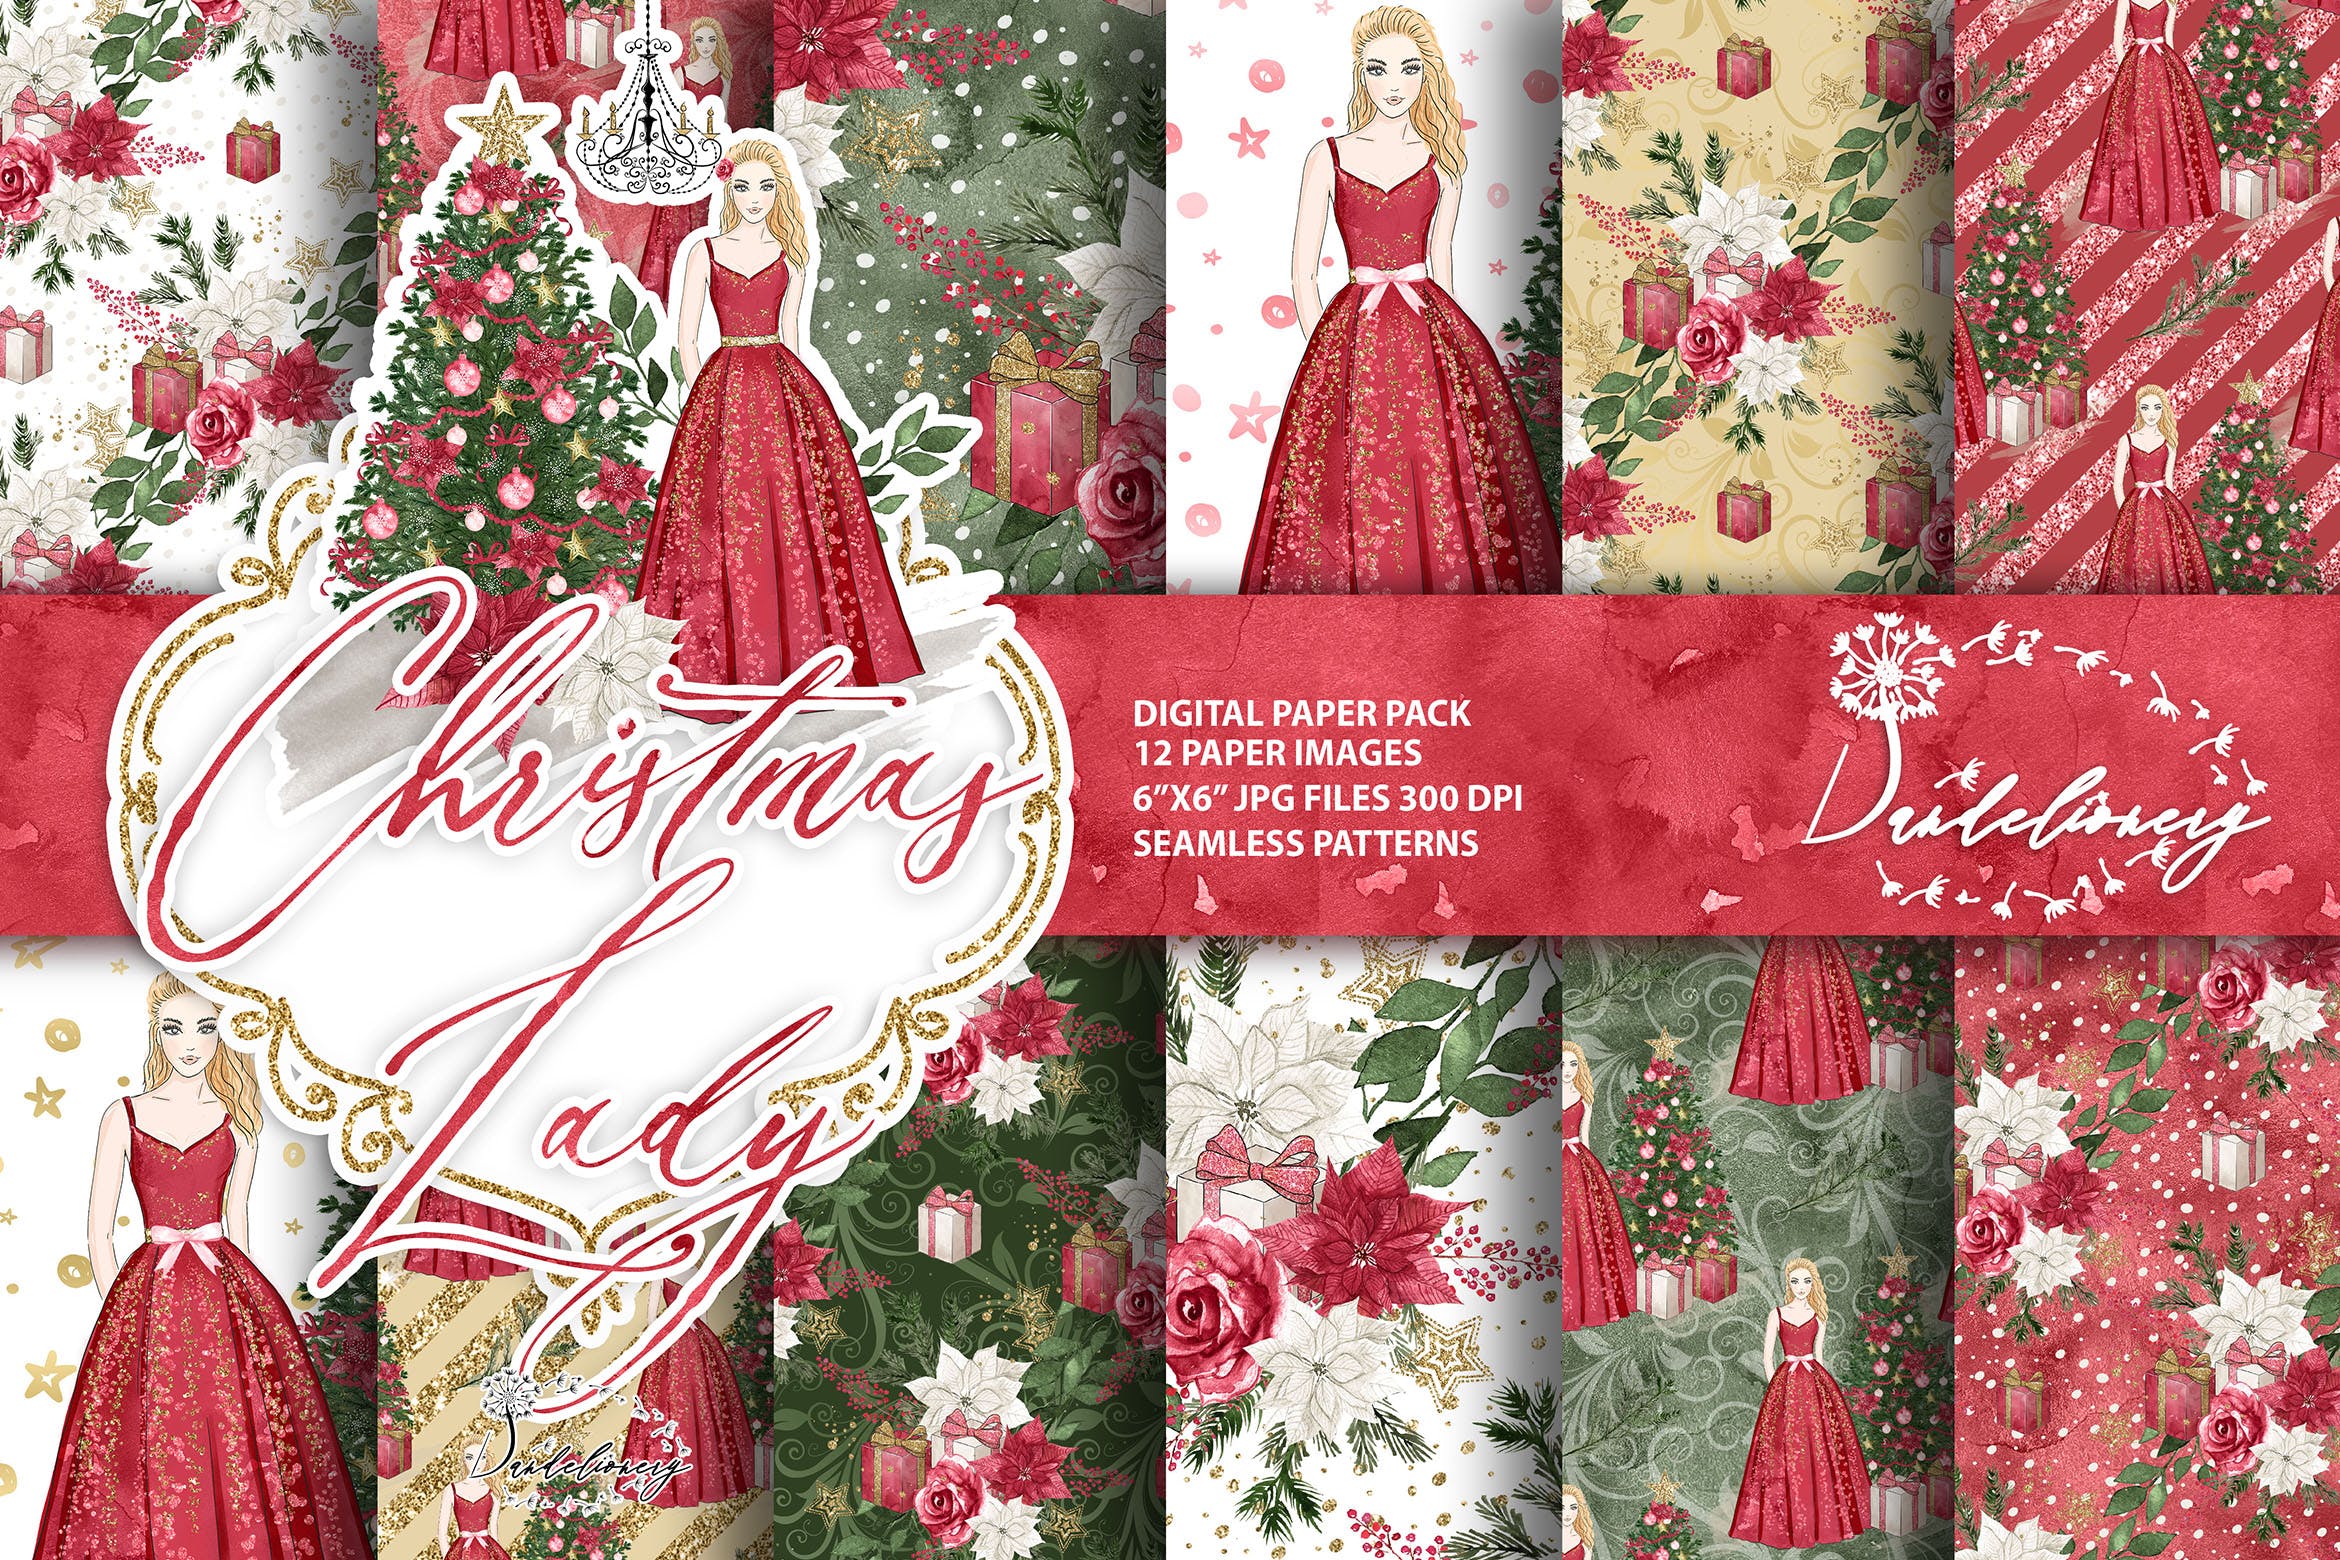 圣诞节&美女手绘图案数码纸张背景素材 Christmas Lady digital paper pack插图